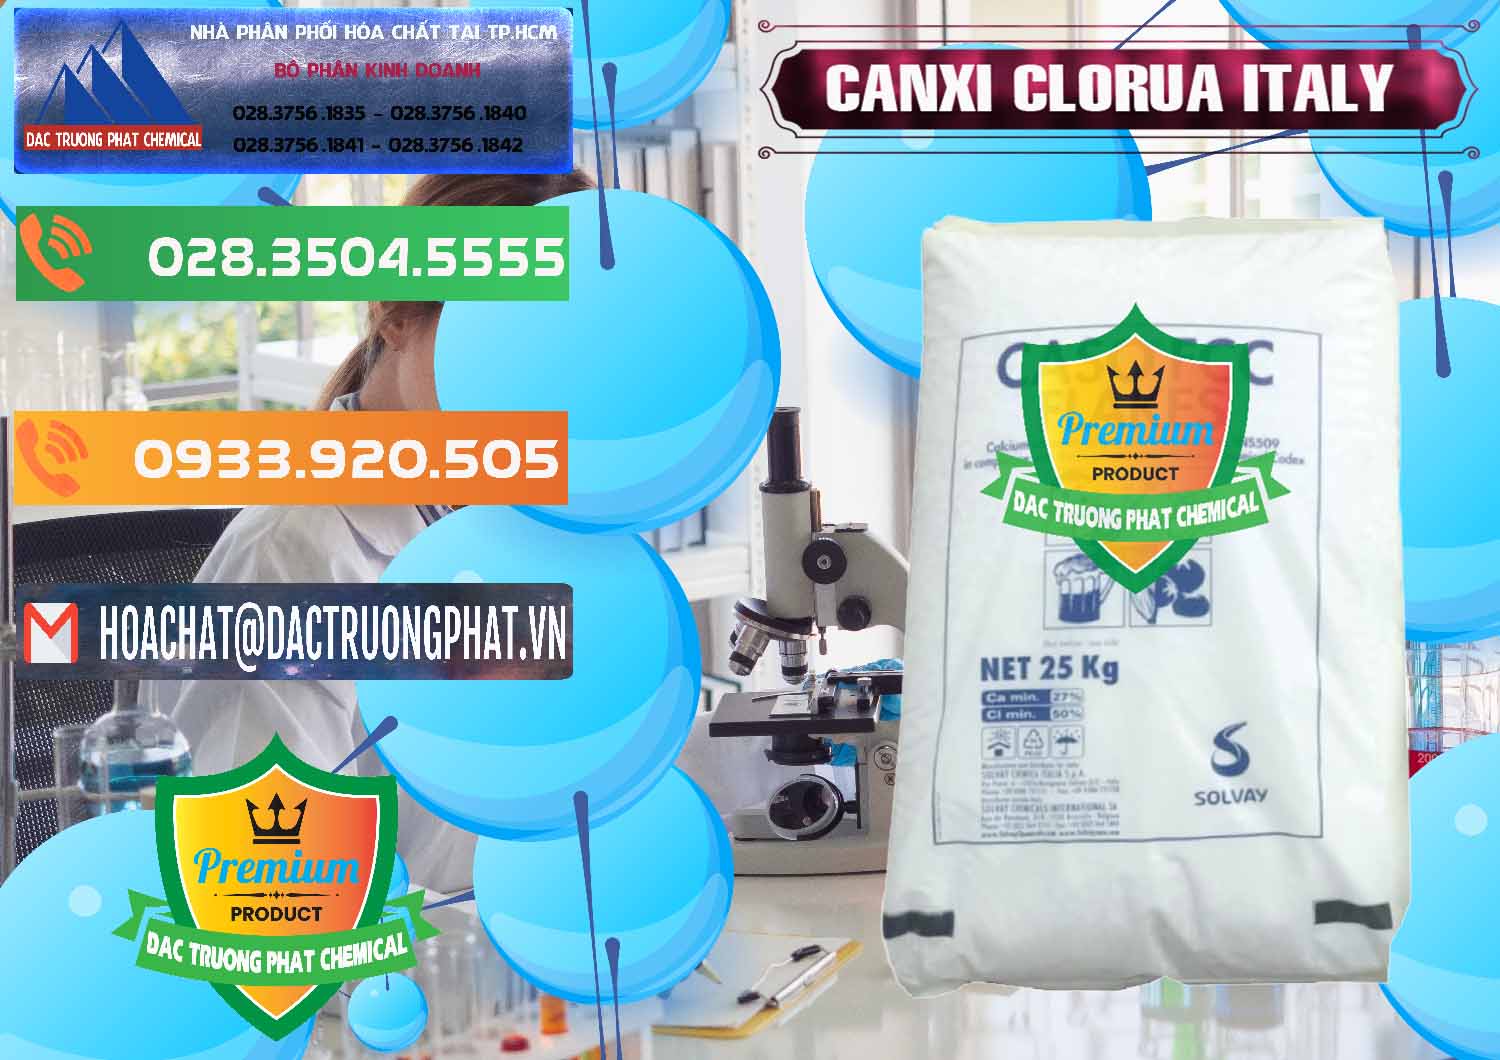 Nơi nhập khẩu & bán CaCl2 – Canxi Clorua Food Grade Ý Italy - 0435 - Đơn vị nhập khẩu & phân phối hóa chất tại TP.HCM - hoachatxulynuoc.com.vn